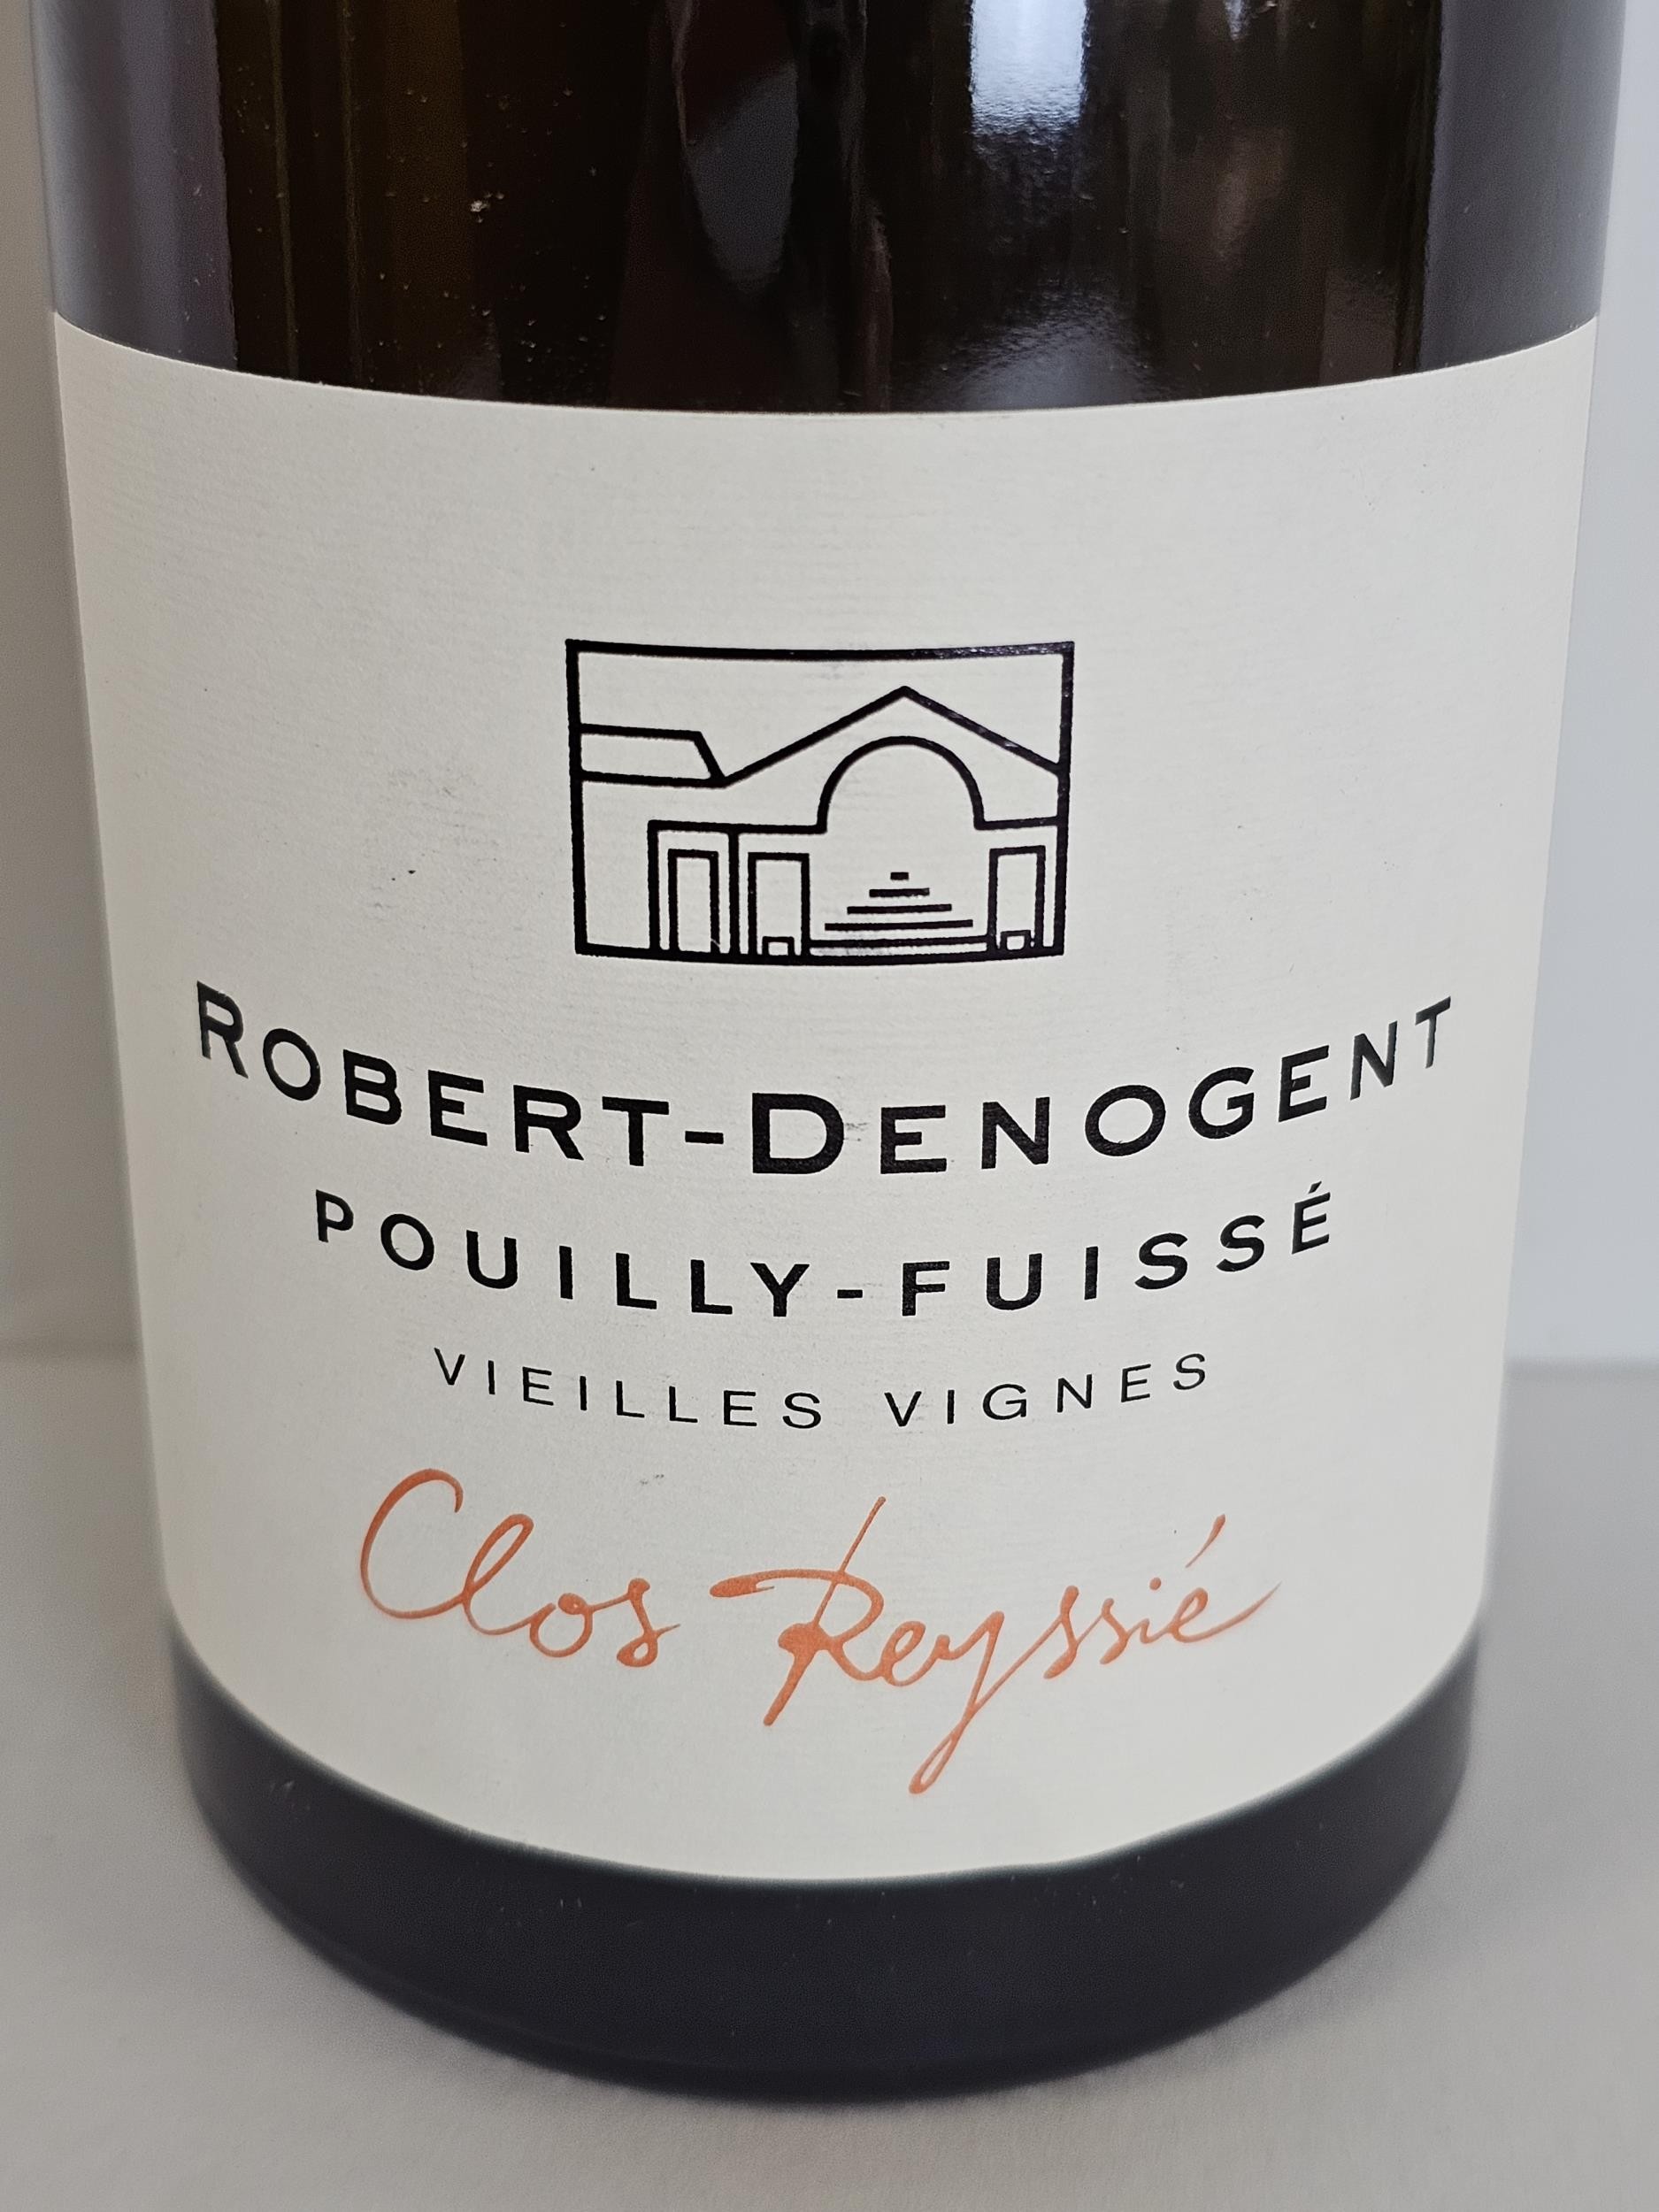 2015 Domaine Robert-Denogent Clos Reyssié Vieilles Vignes, Pouilly-Fuissé Premier Cru, France. 4 x - Bild 4 aus 4